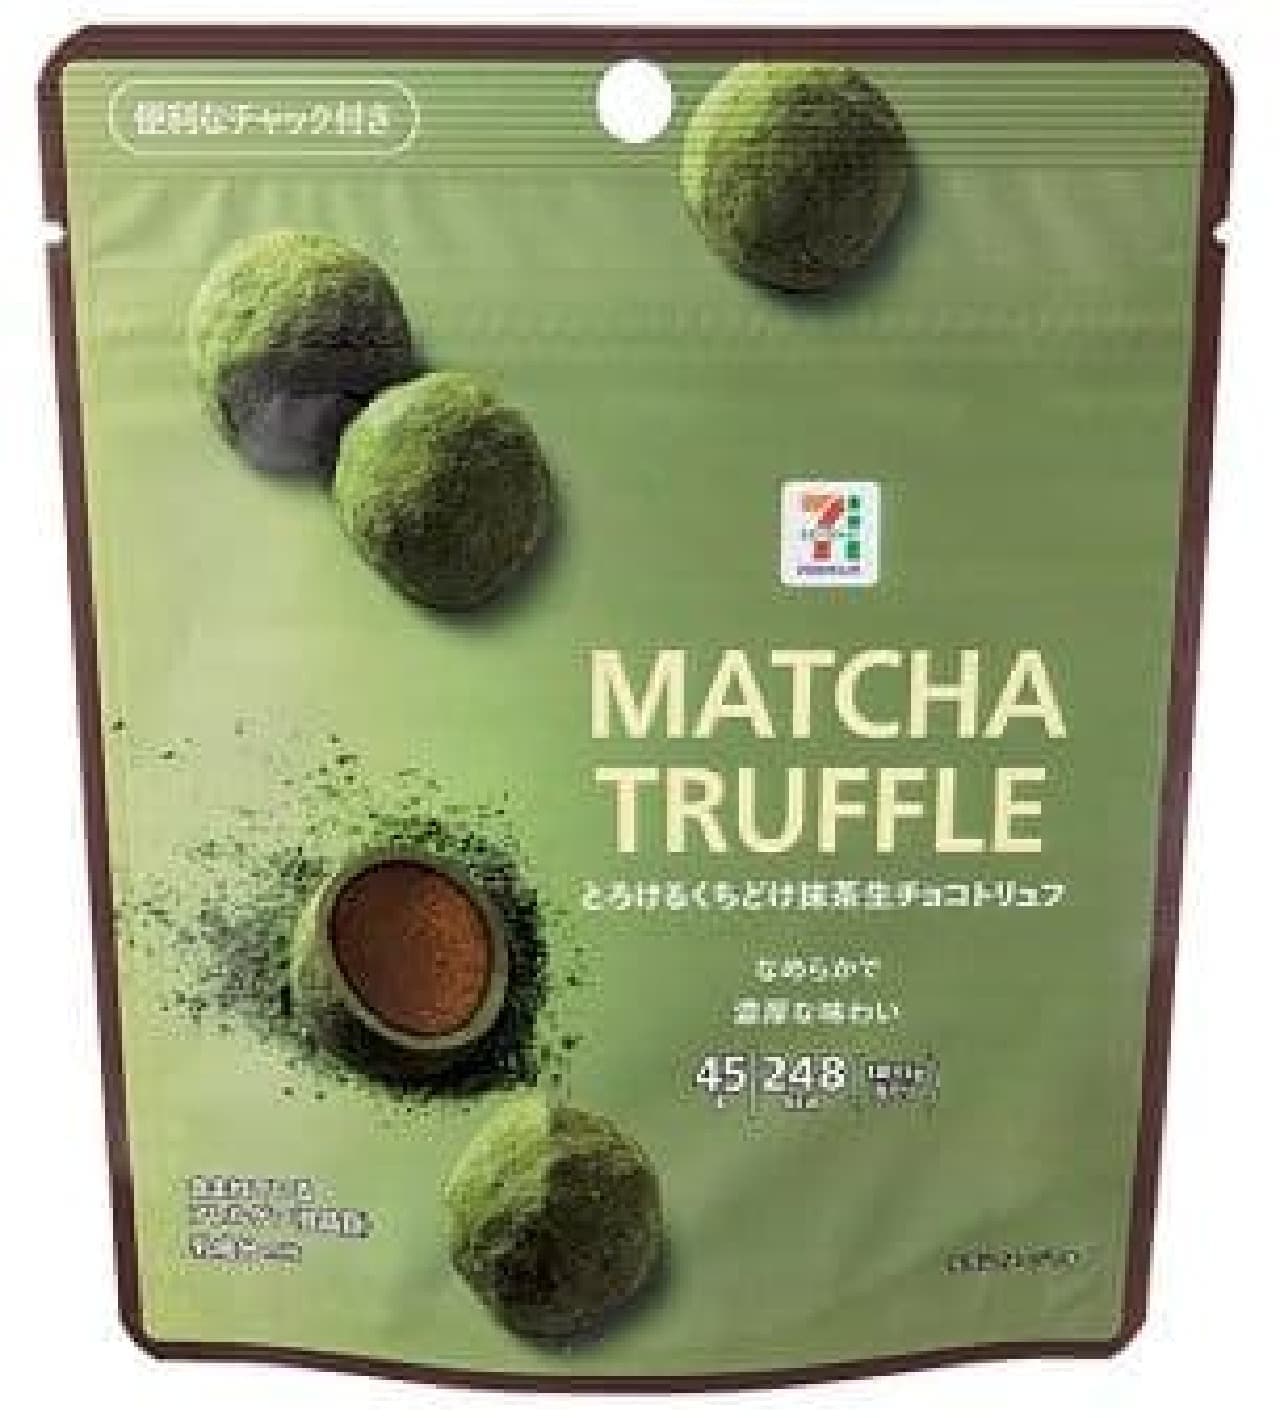 7-ELEVEN "Matcha Truffle